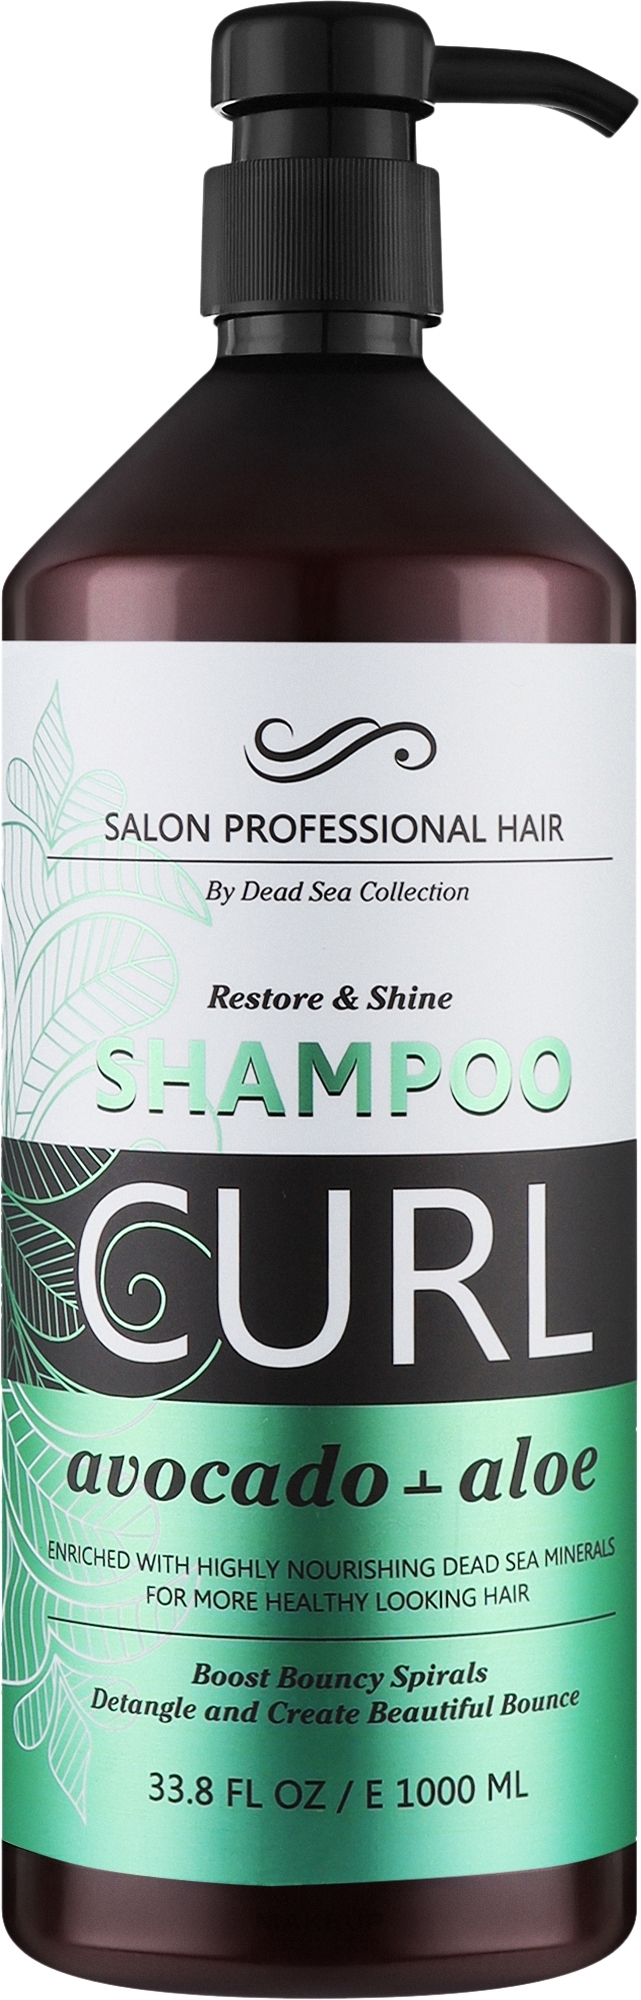 Шампунь для волос "Авокадо и алоэ" - Dead Sea Collection Avocado & Aloe Curl Shampoo — фото 1000ml